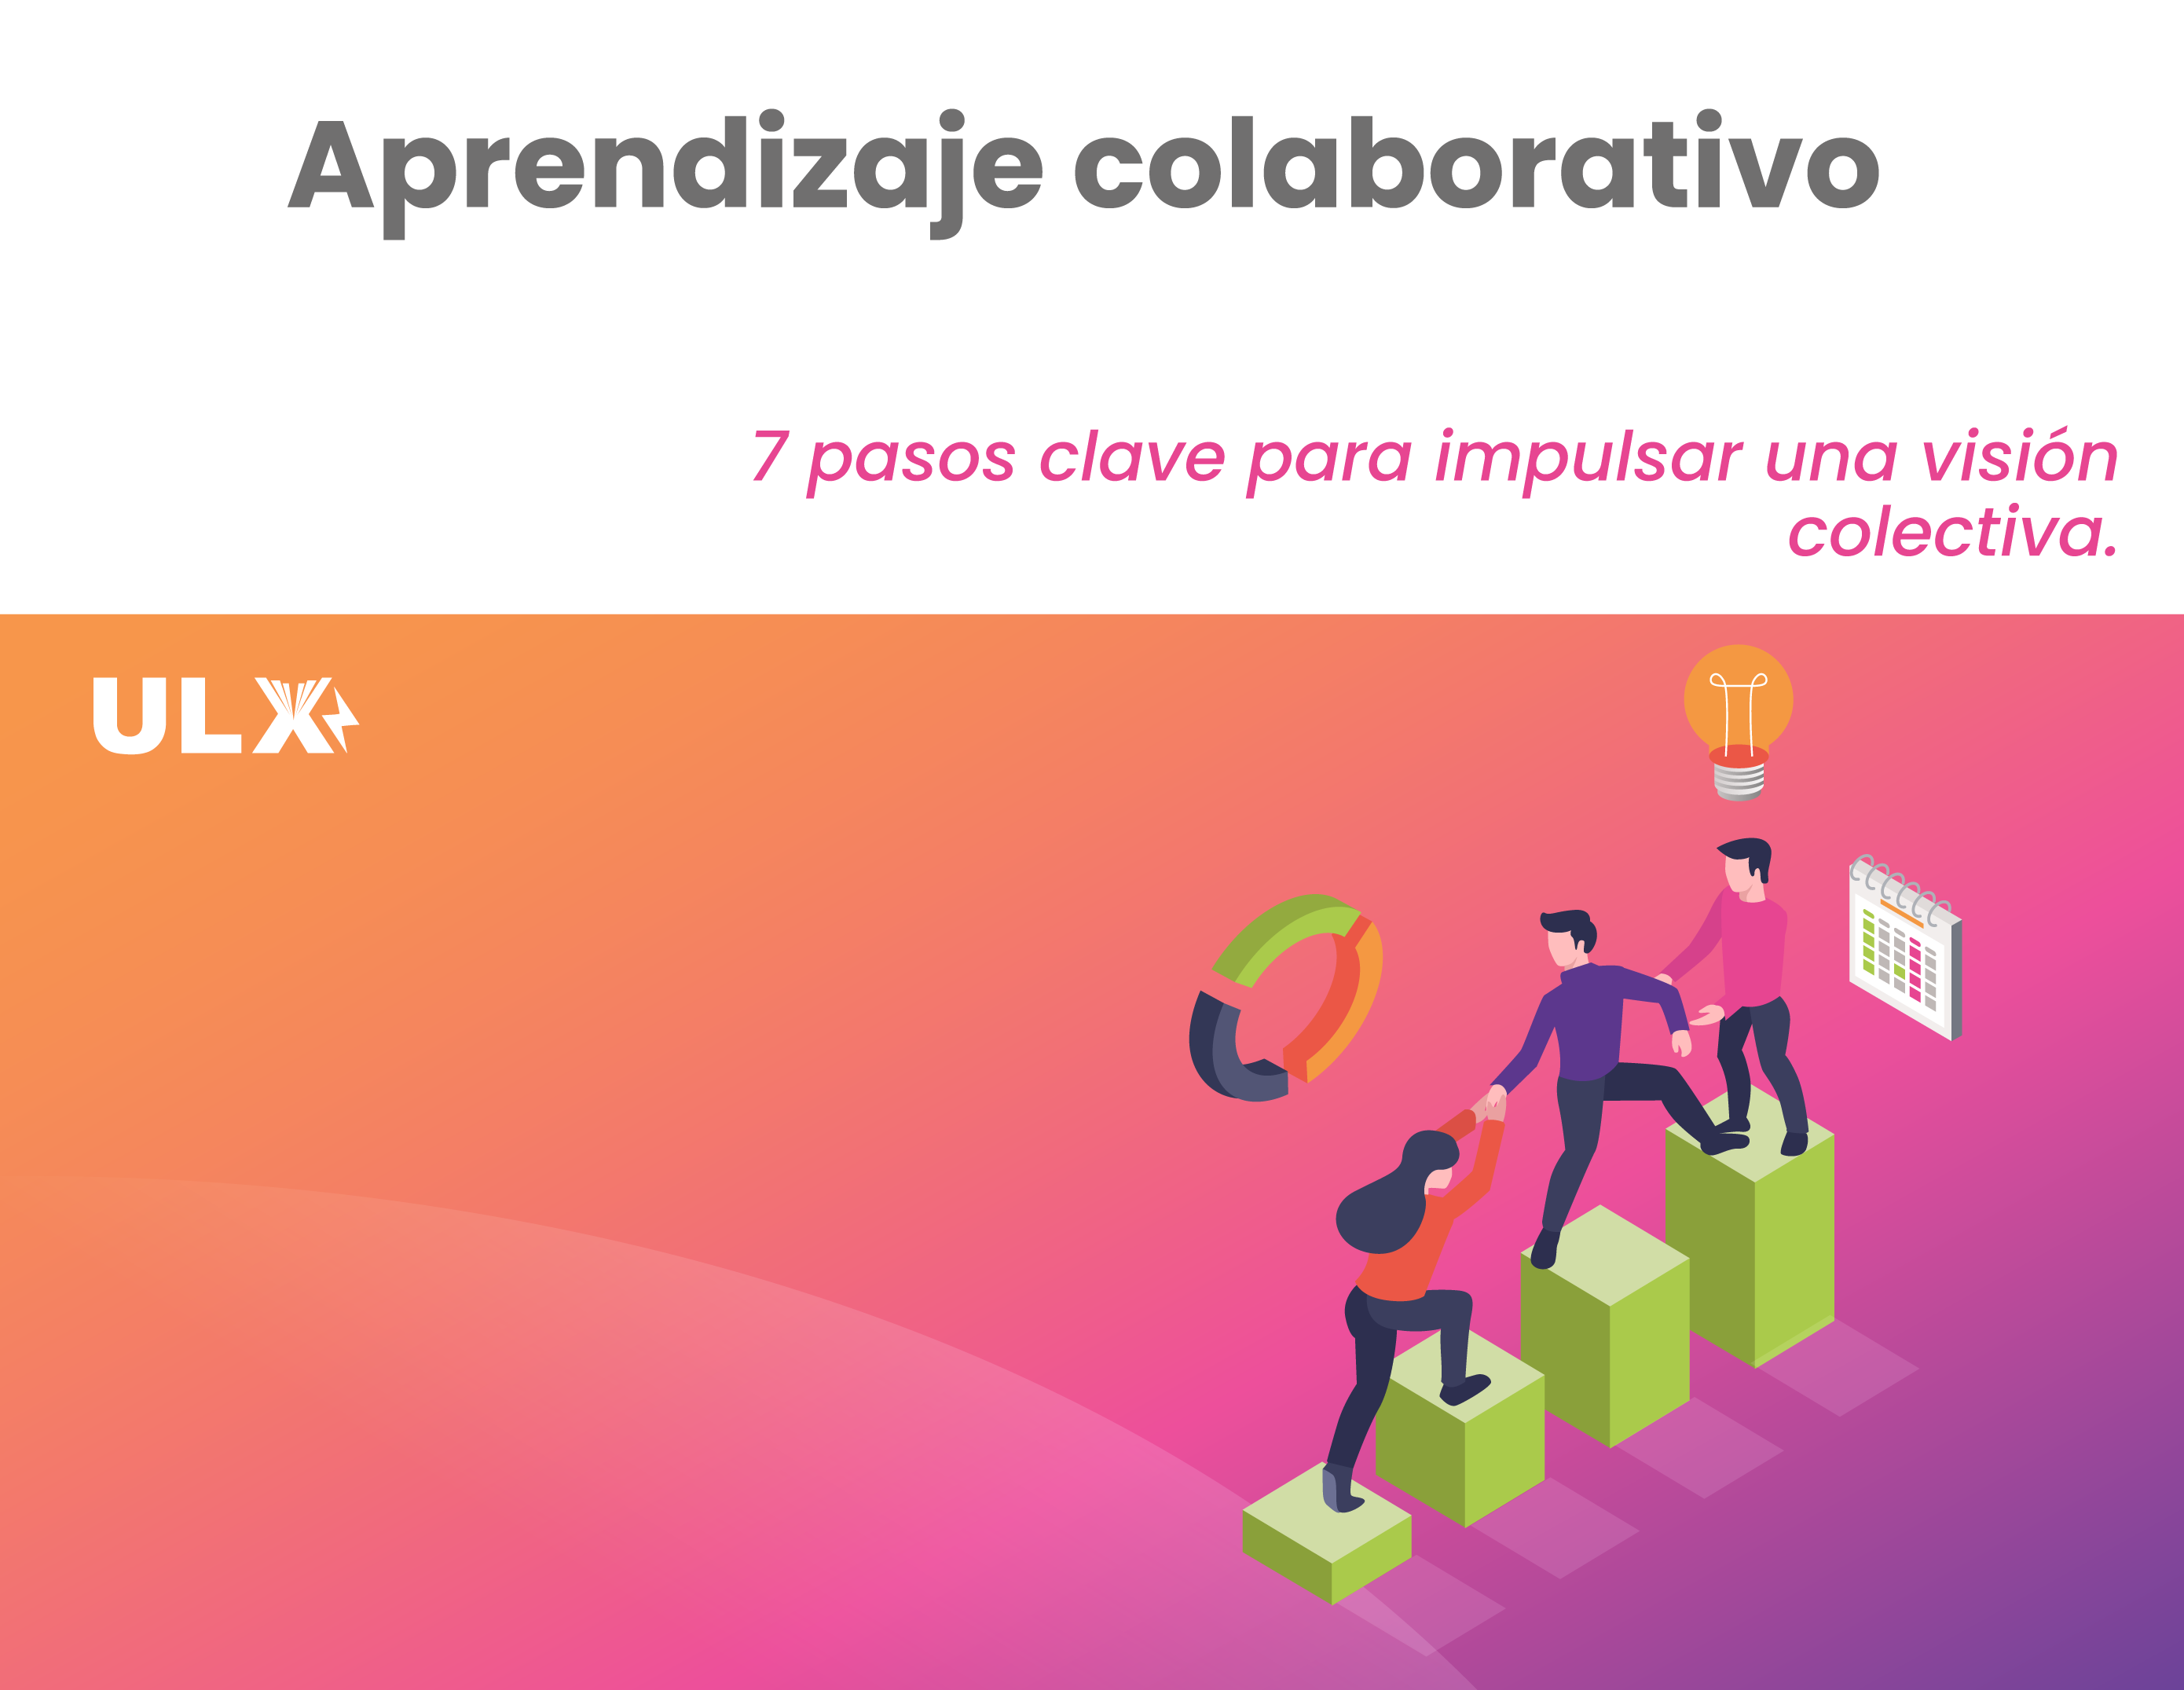 ULX agile - Aprendizaje colaborativo